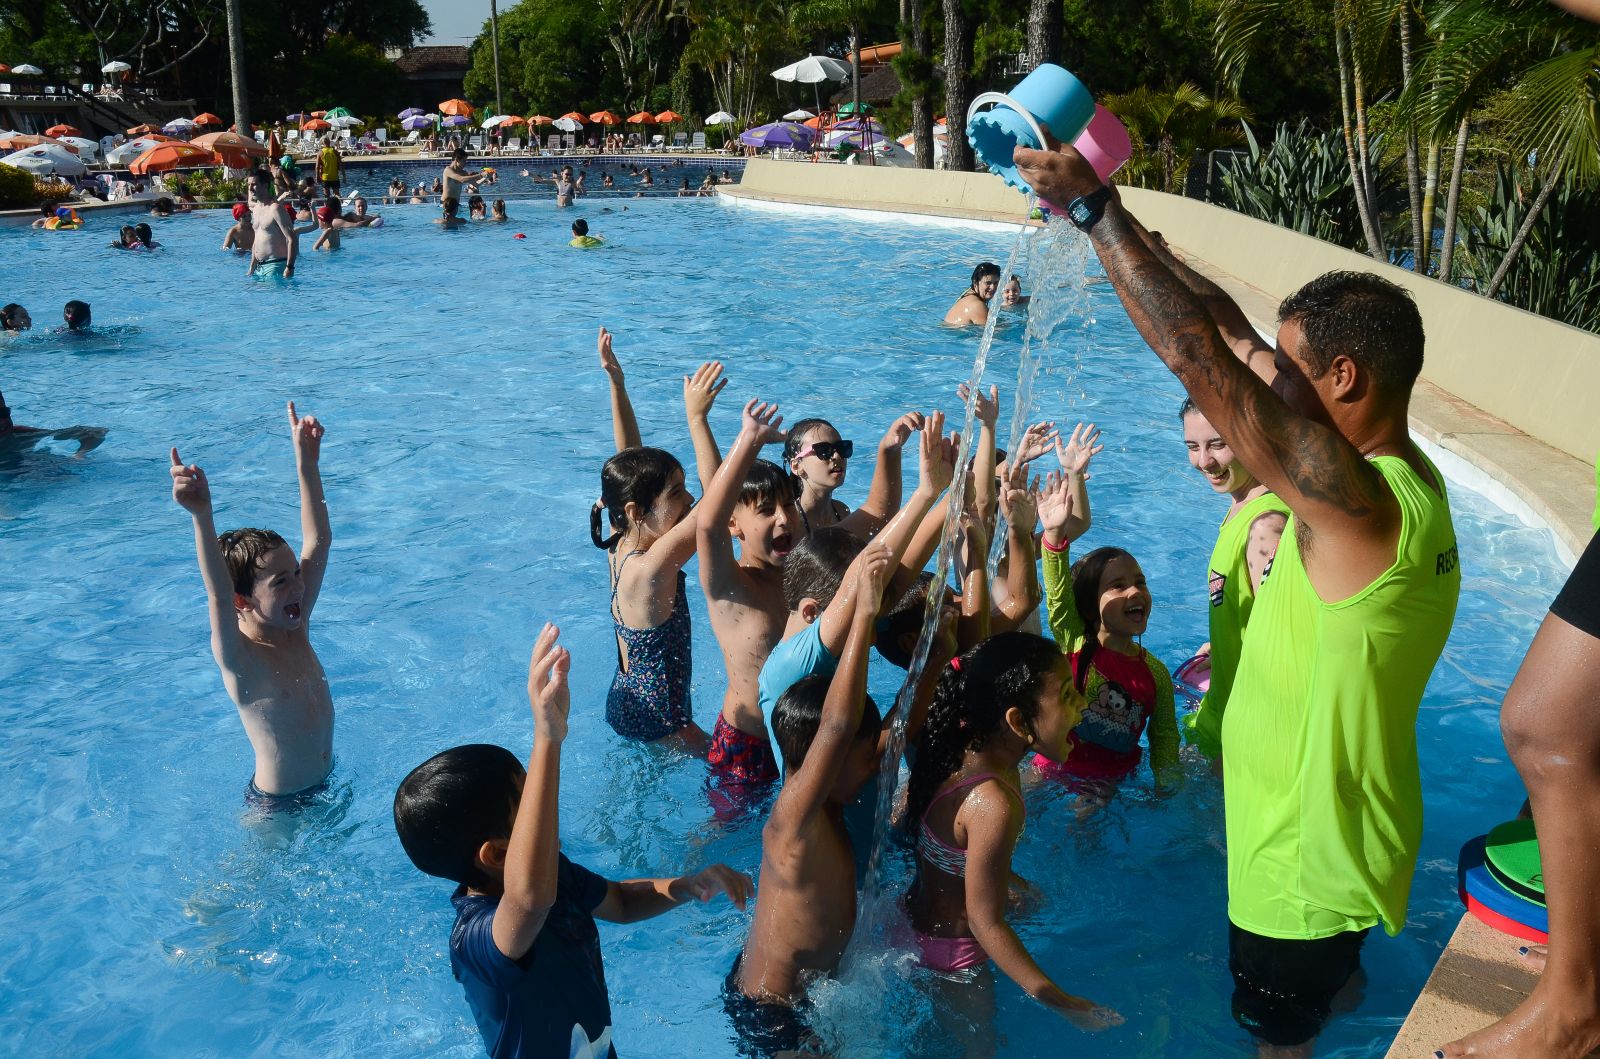 Sogipa: Parque aquático da Sogipa está oficialmente aberto. Clube vai  controlar a quantidade de pessoas no local para evitar aglomerações